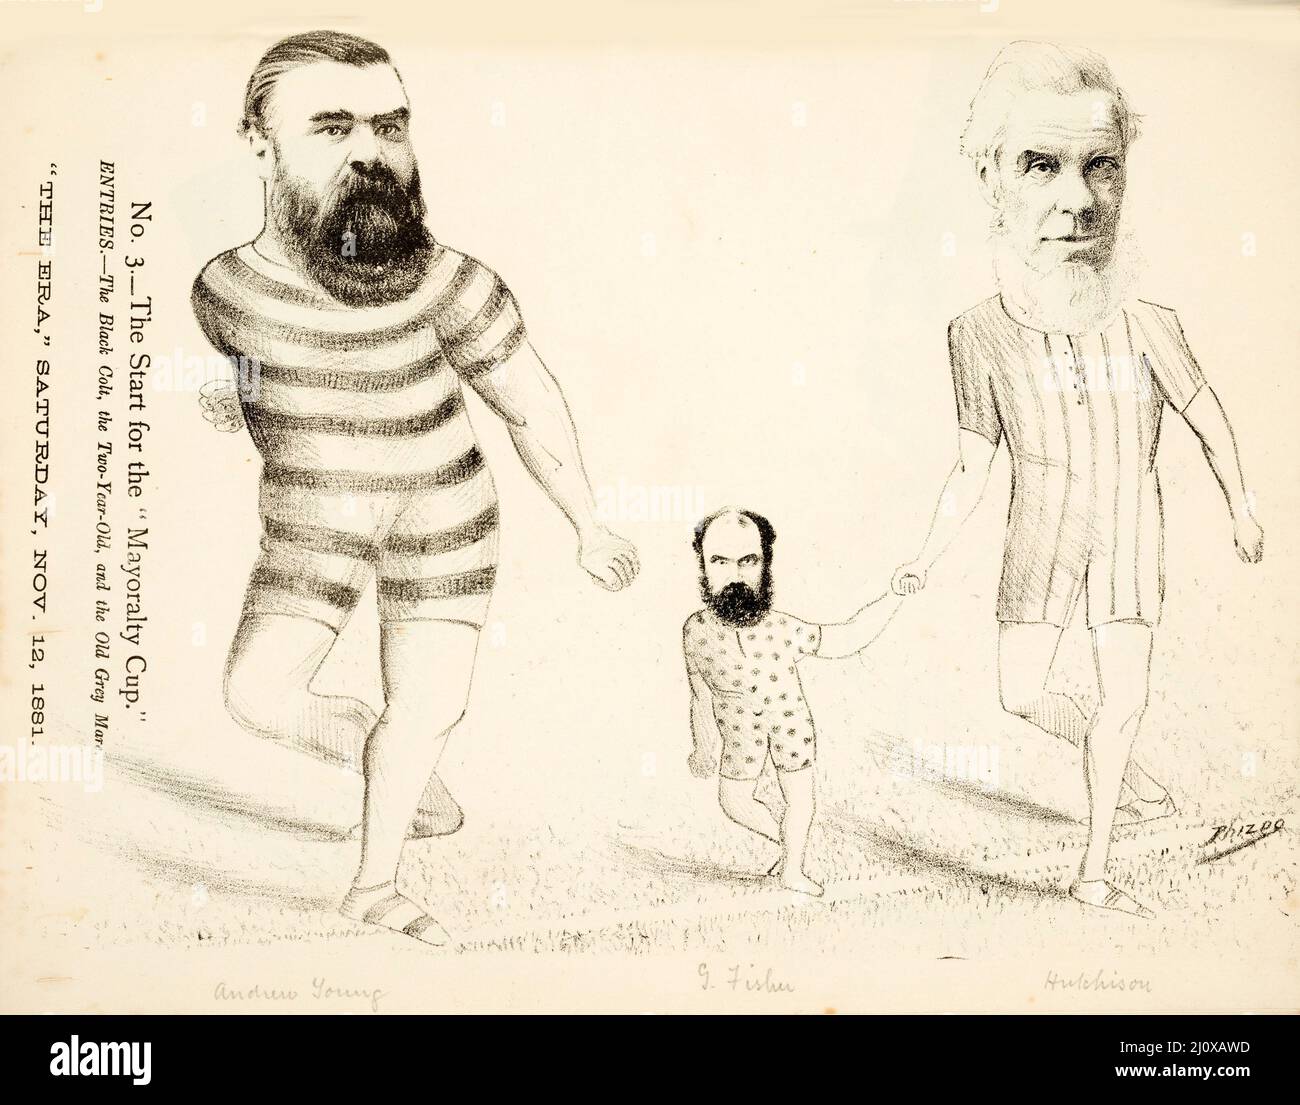 Skizze der politischen Fragen, die für die Parlamentswahlen 1881 in Neuseeland relevant sind, aus einer Karikatur, die in der Wellington Advertiser Supplement veröffentlicht wurde Stockfoto